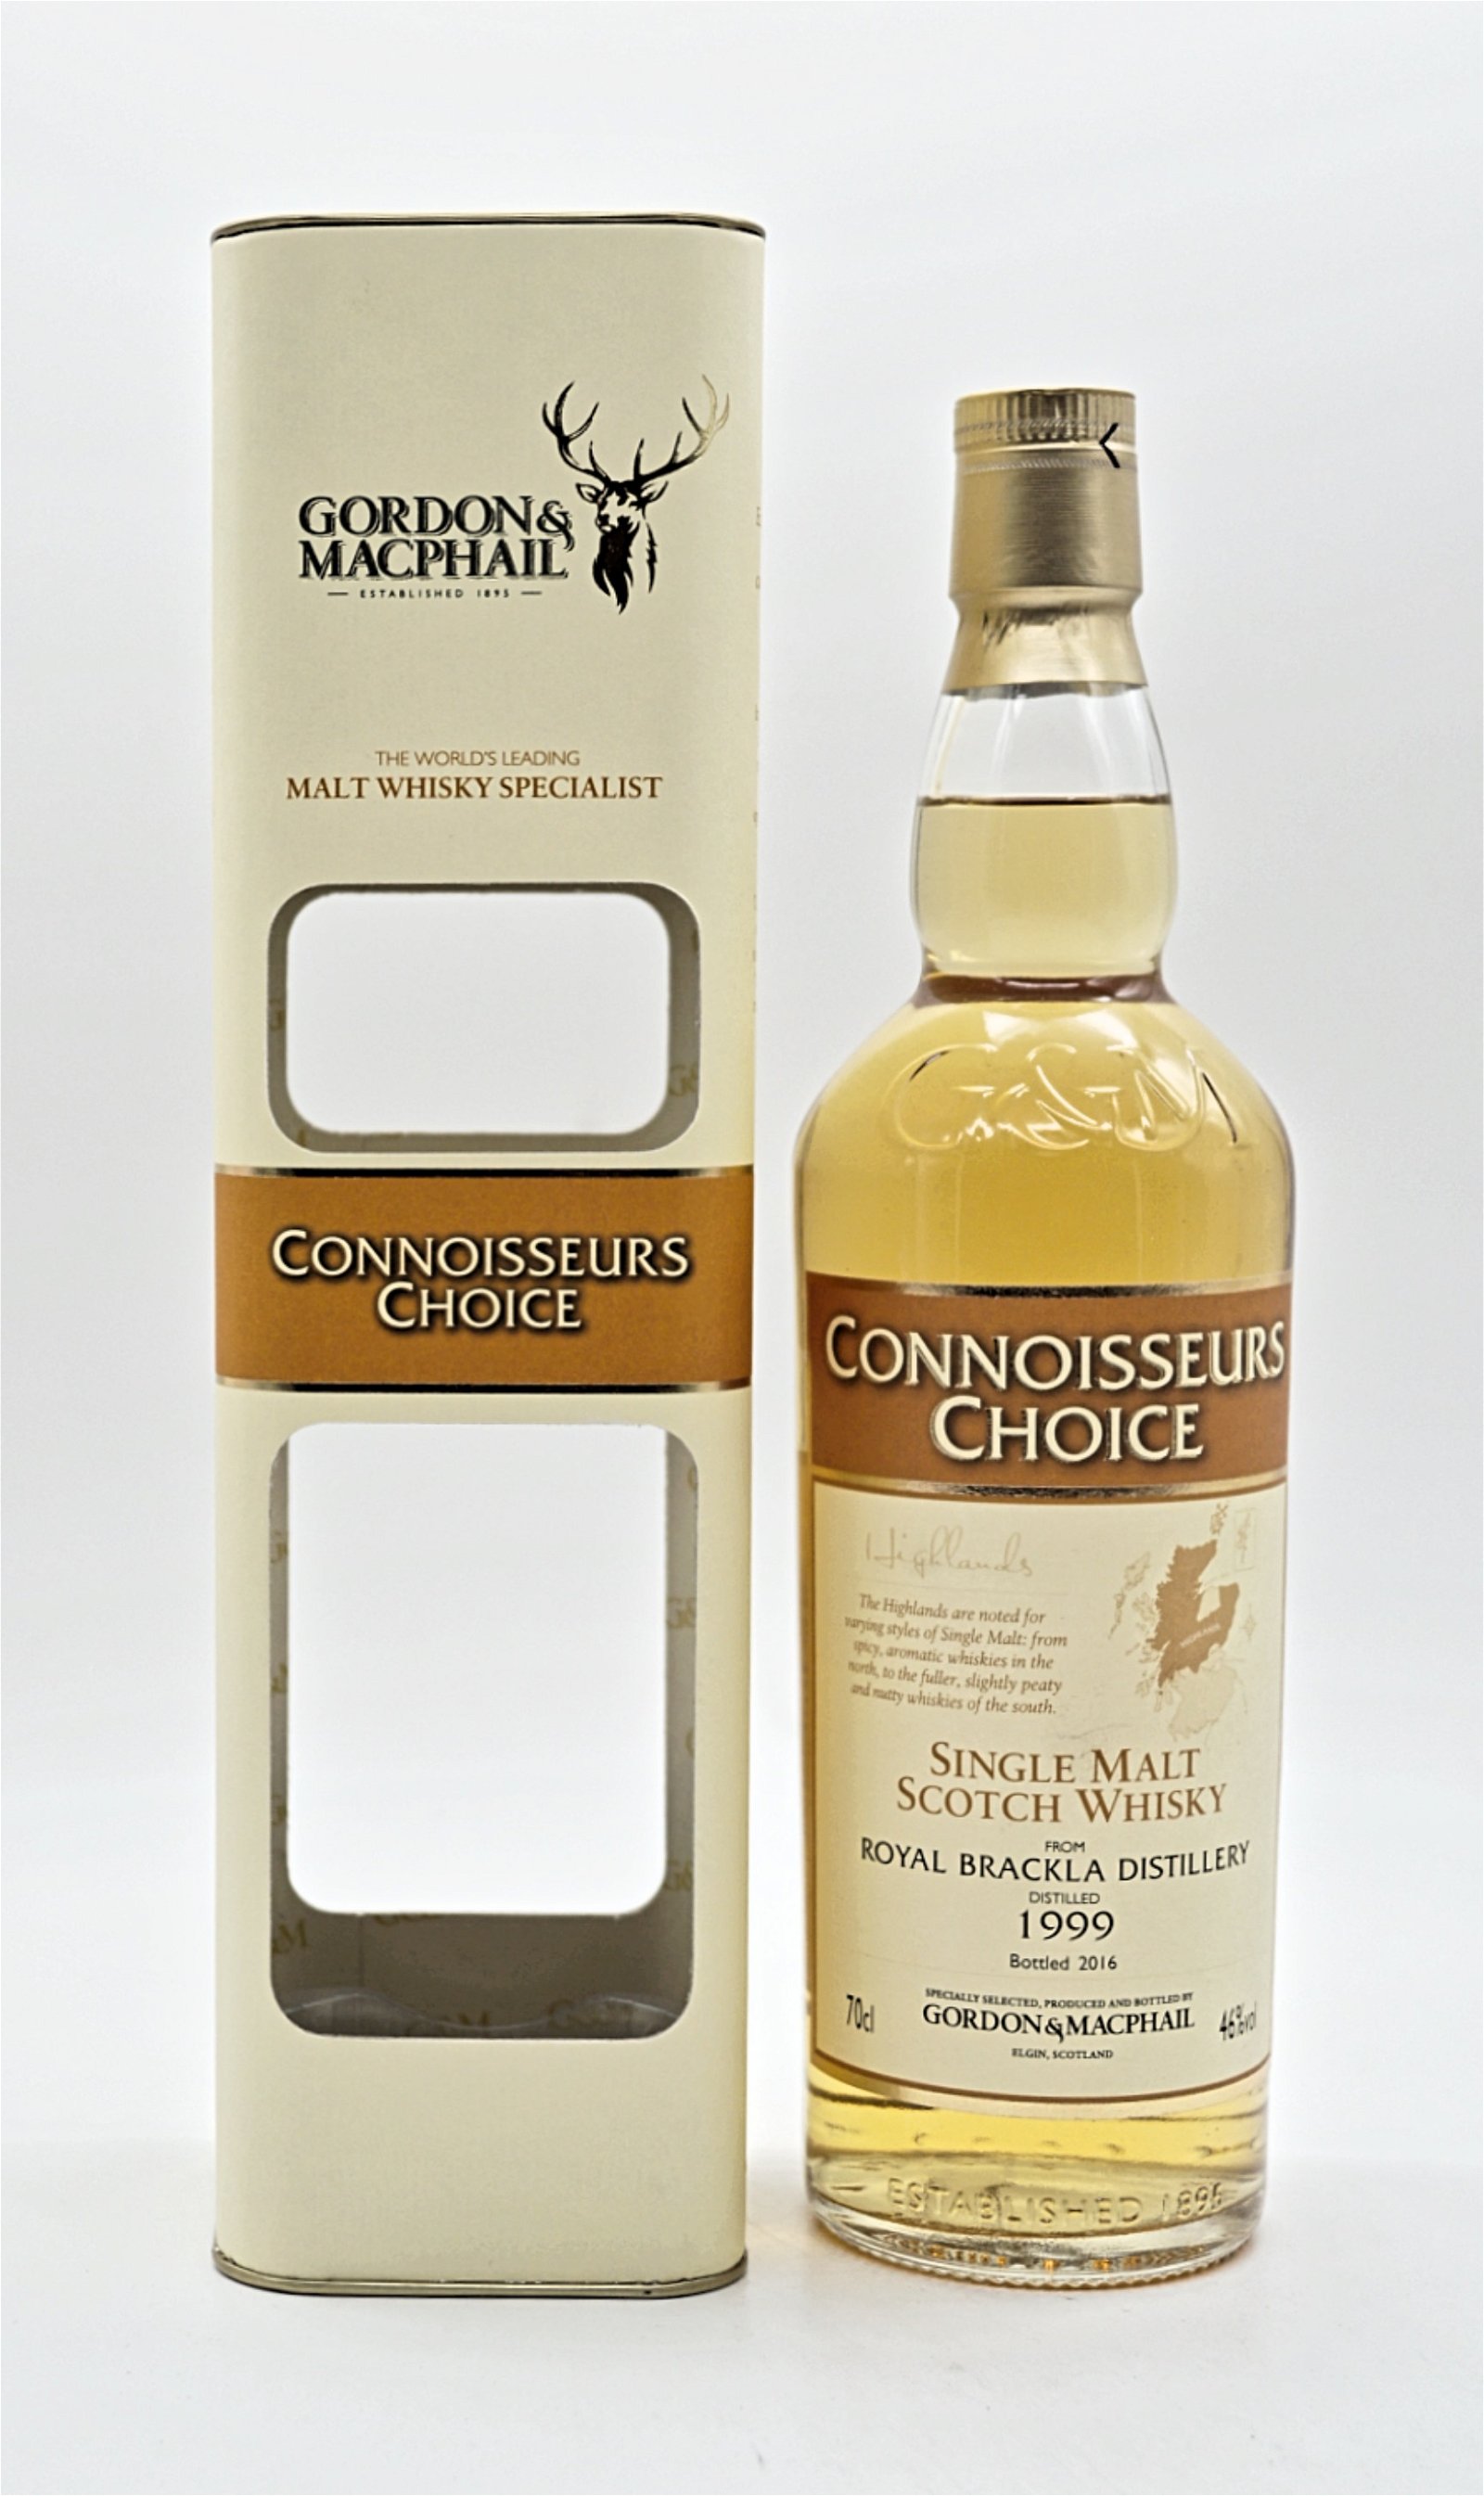 Gordon & Macphail Connoisseurs Choice Royal Brackla Distillery 1999/2016 Single Malt Scotch Whisky